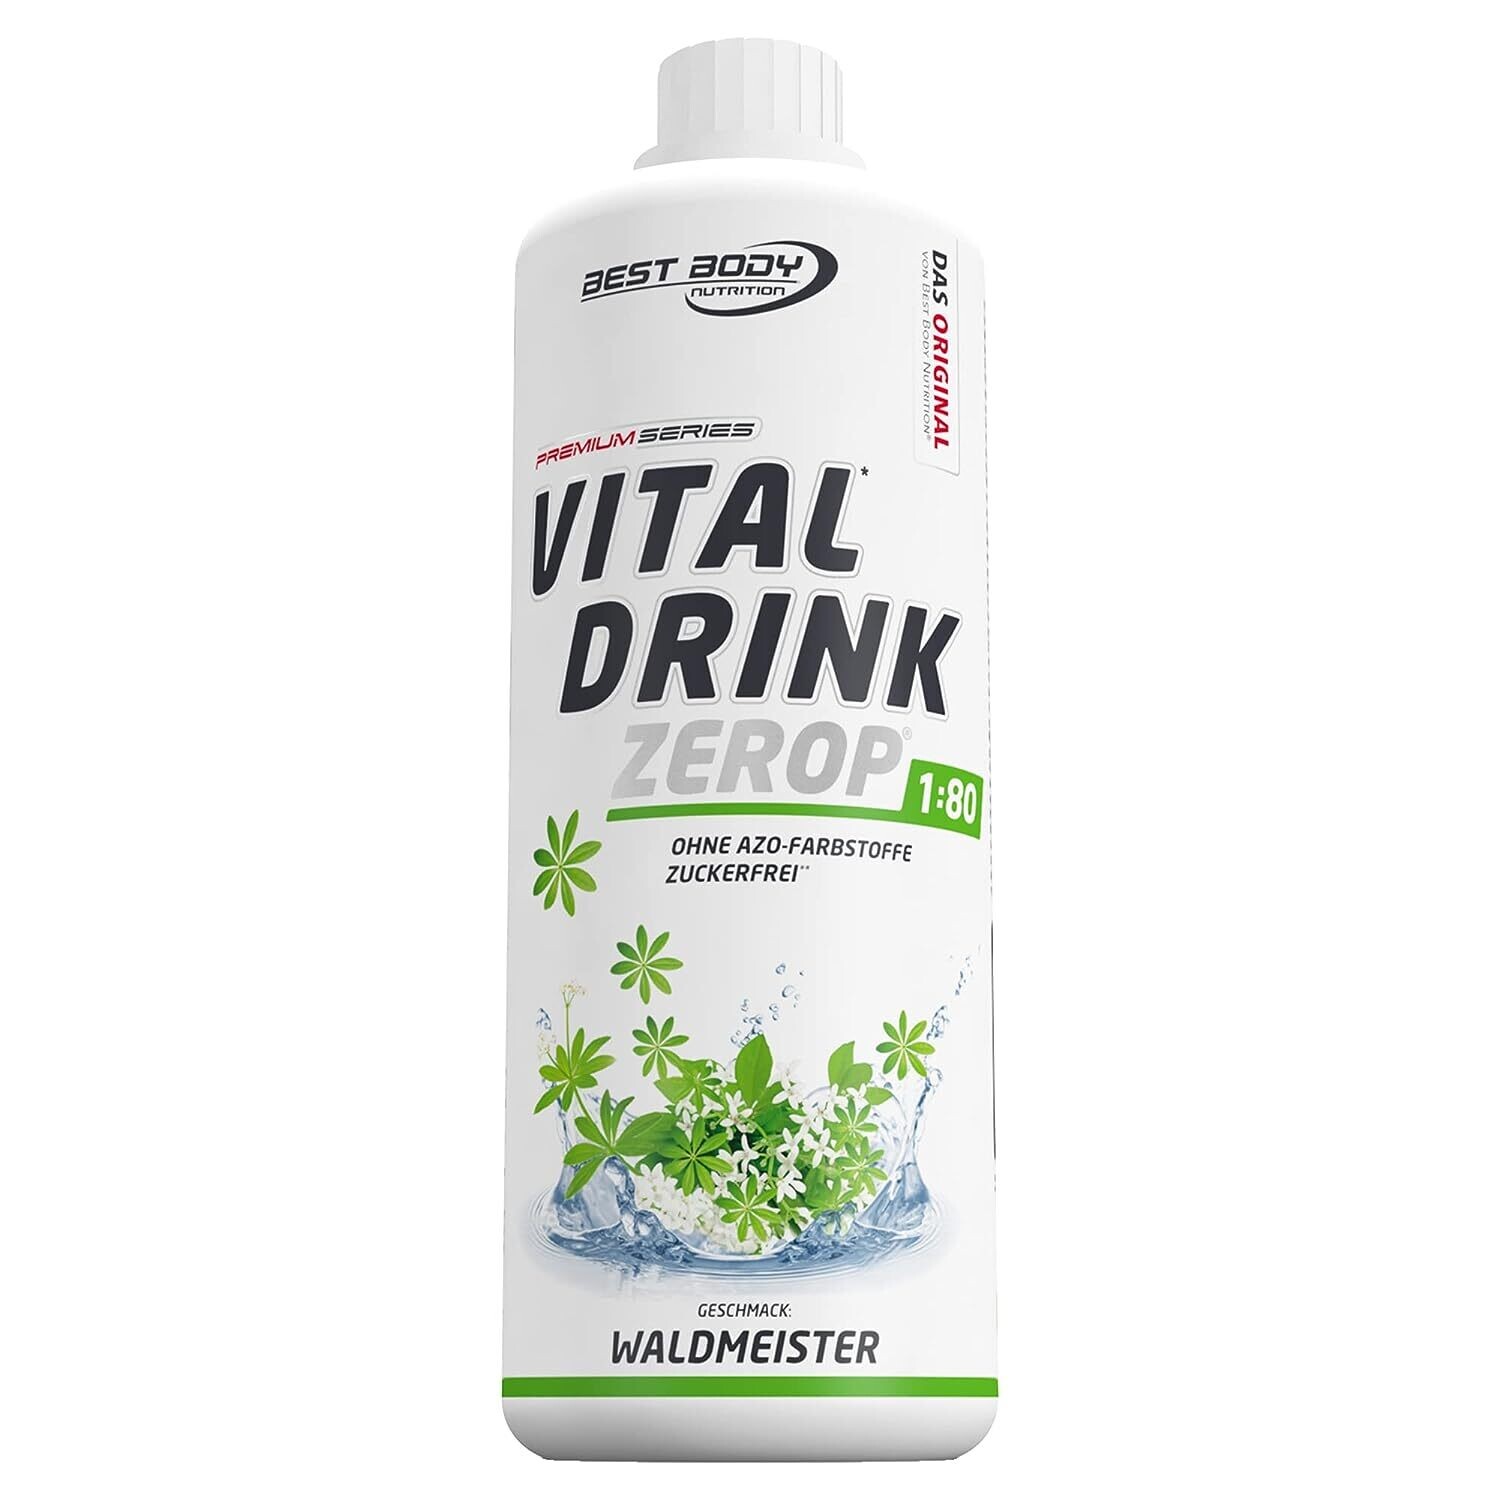 Getränkekonzentrat zuckerfrei Best Body Nutrition Vital Drink ZEROP® - Waldmeister 1:80 1 Liter ergibt 80 Liter Fertiggetränk